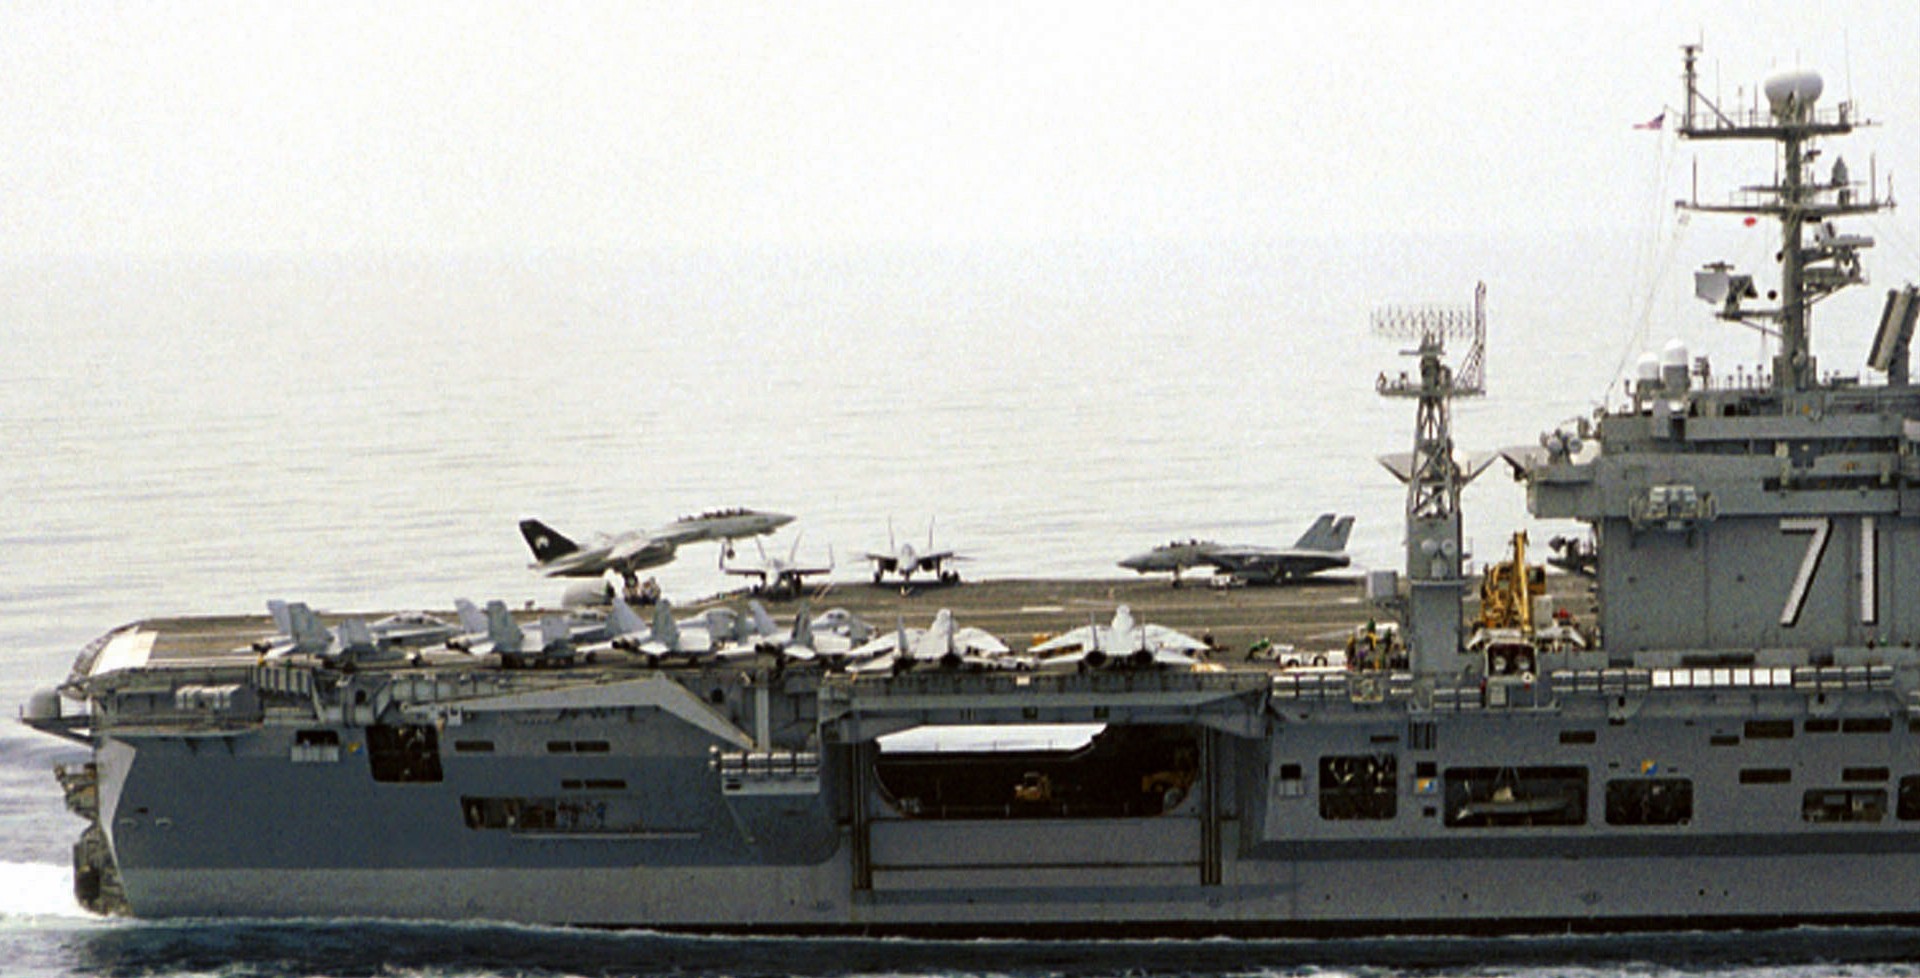 cvn-71 uss theodore roosevelt nimitz class aircraft carrier qualifications 02